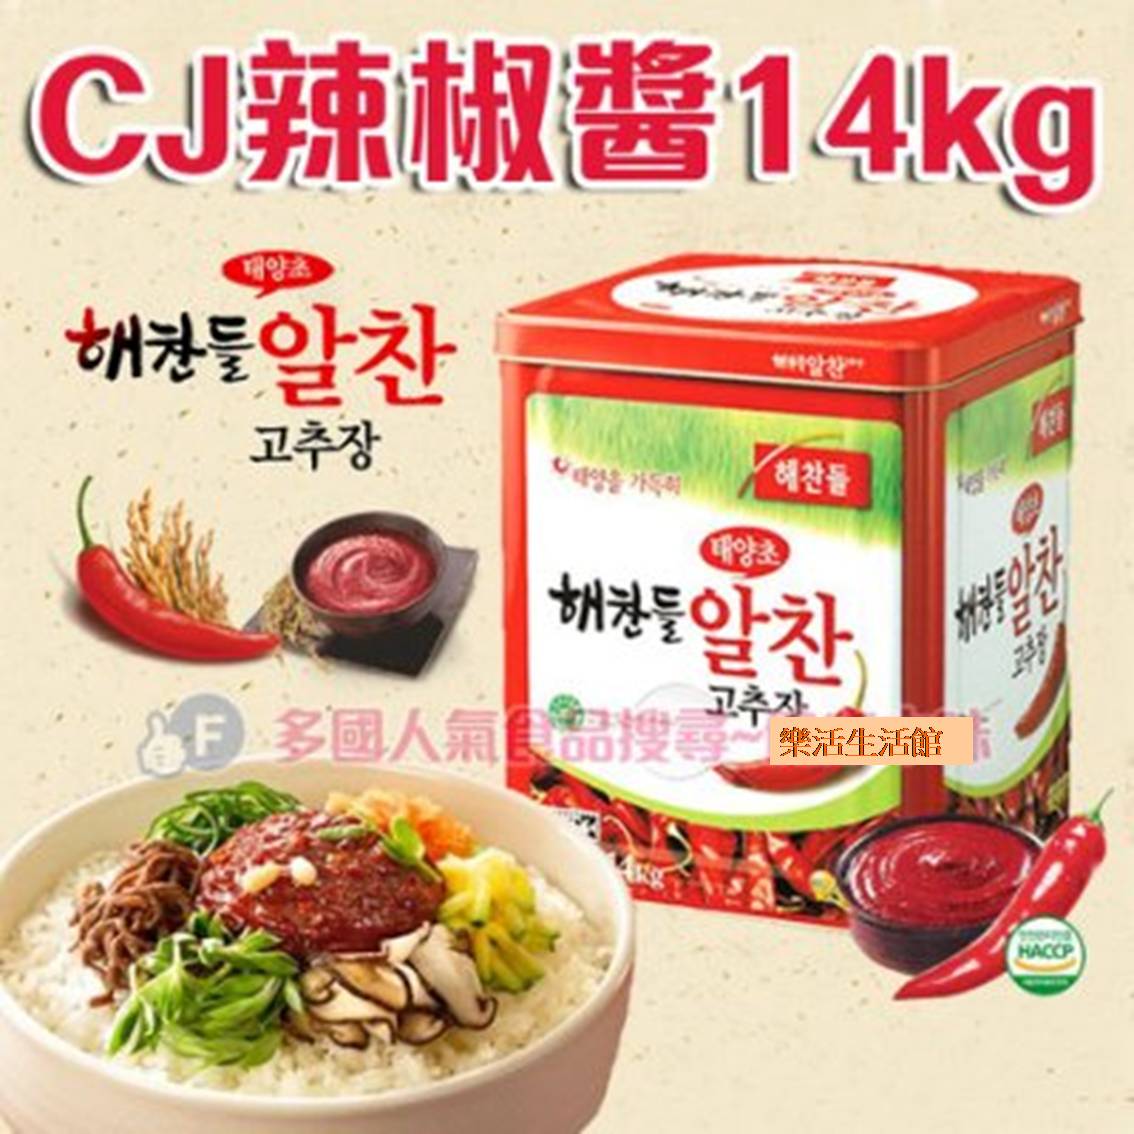 韓國CJ辣椒醬14公斤桶裝